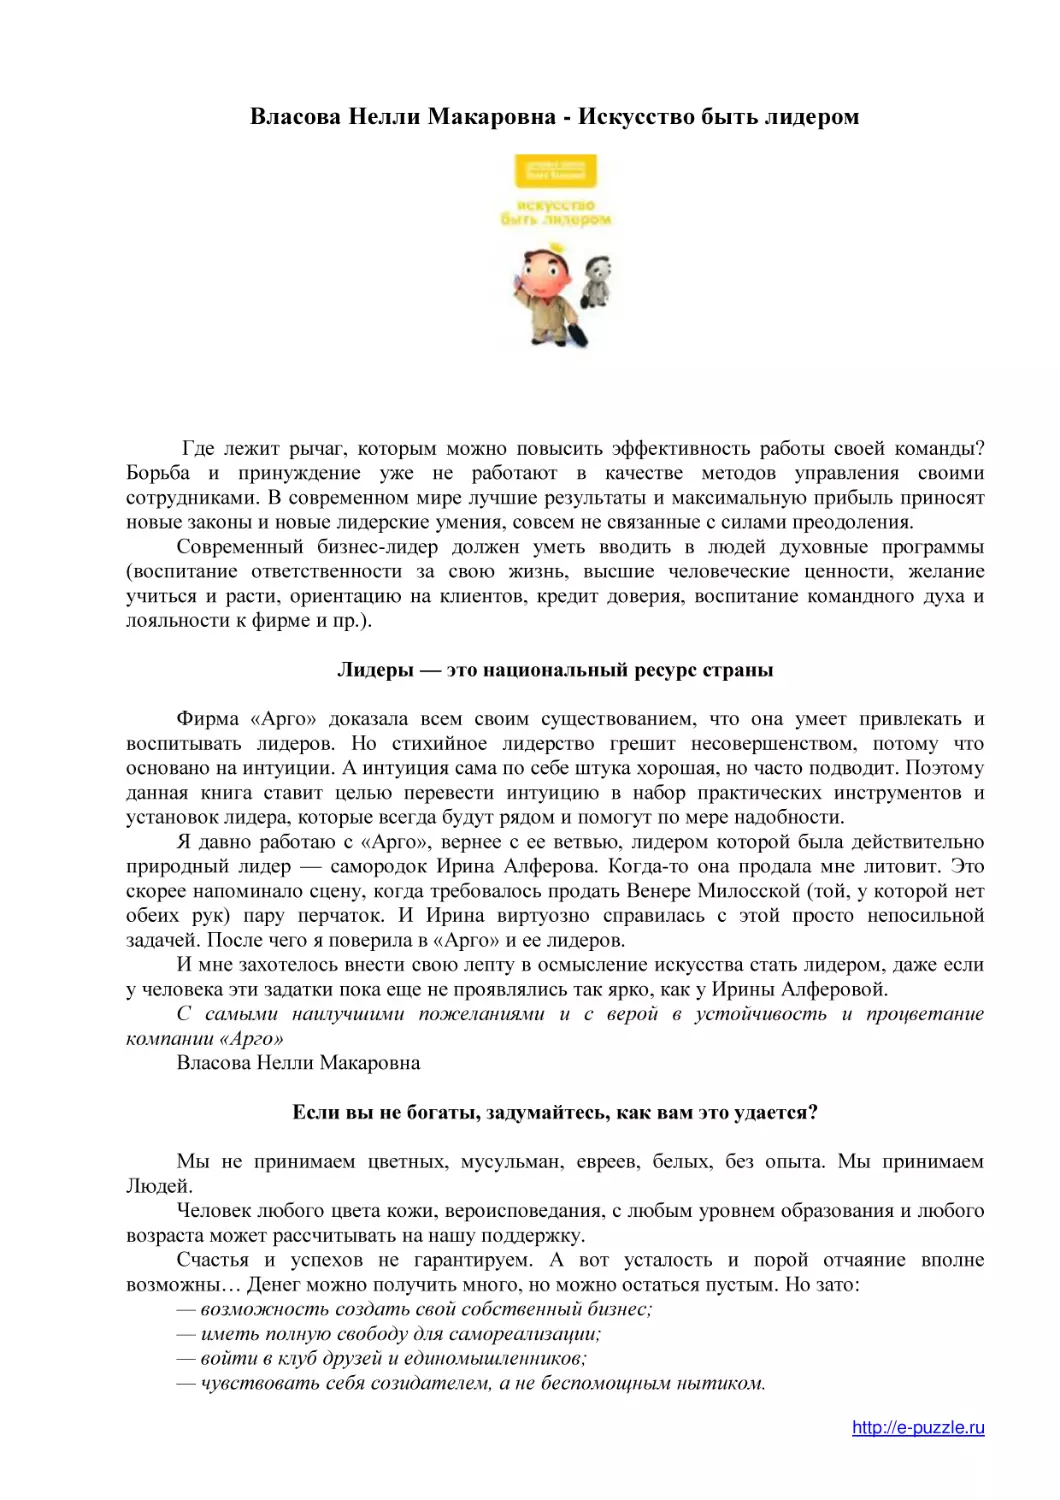 Власова Нелли Макаровна - Искусство быть лидером
www.e-puzzle.ru
Лидеры — это национальный ресурс страны
Если вы не богаты, задумайтесь, как вам это удается?